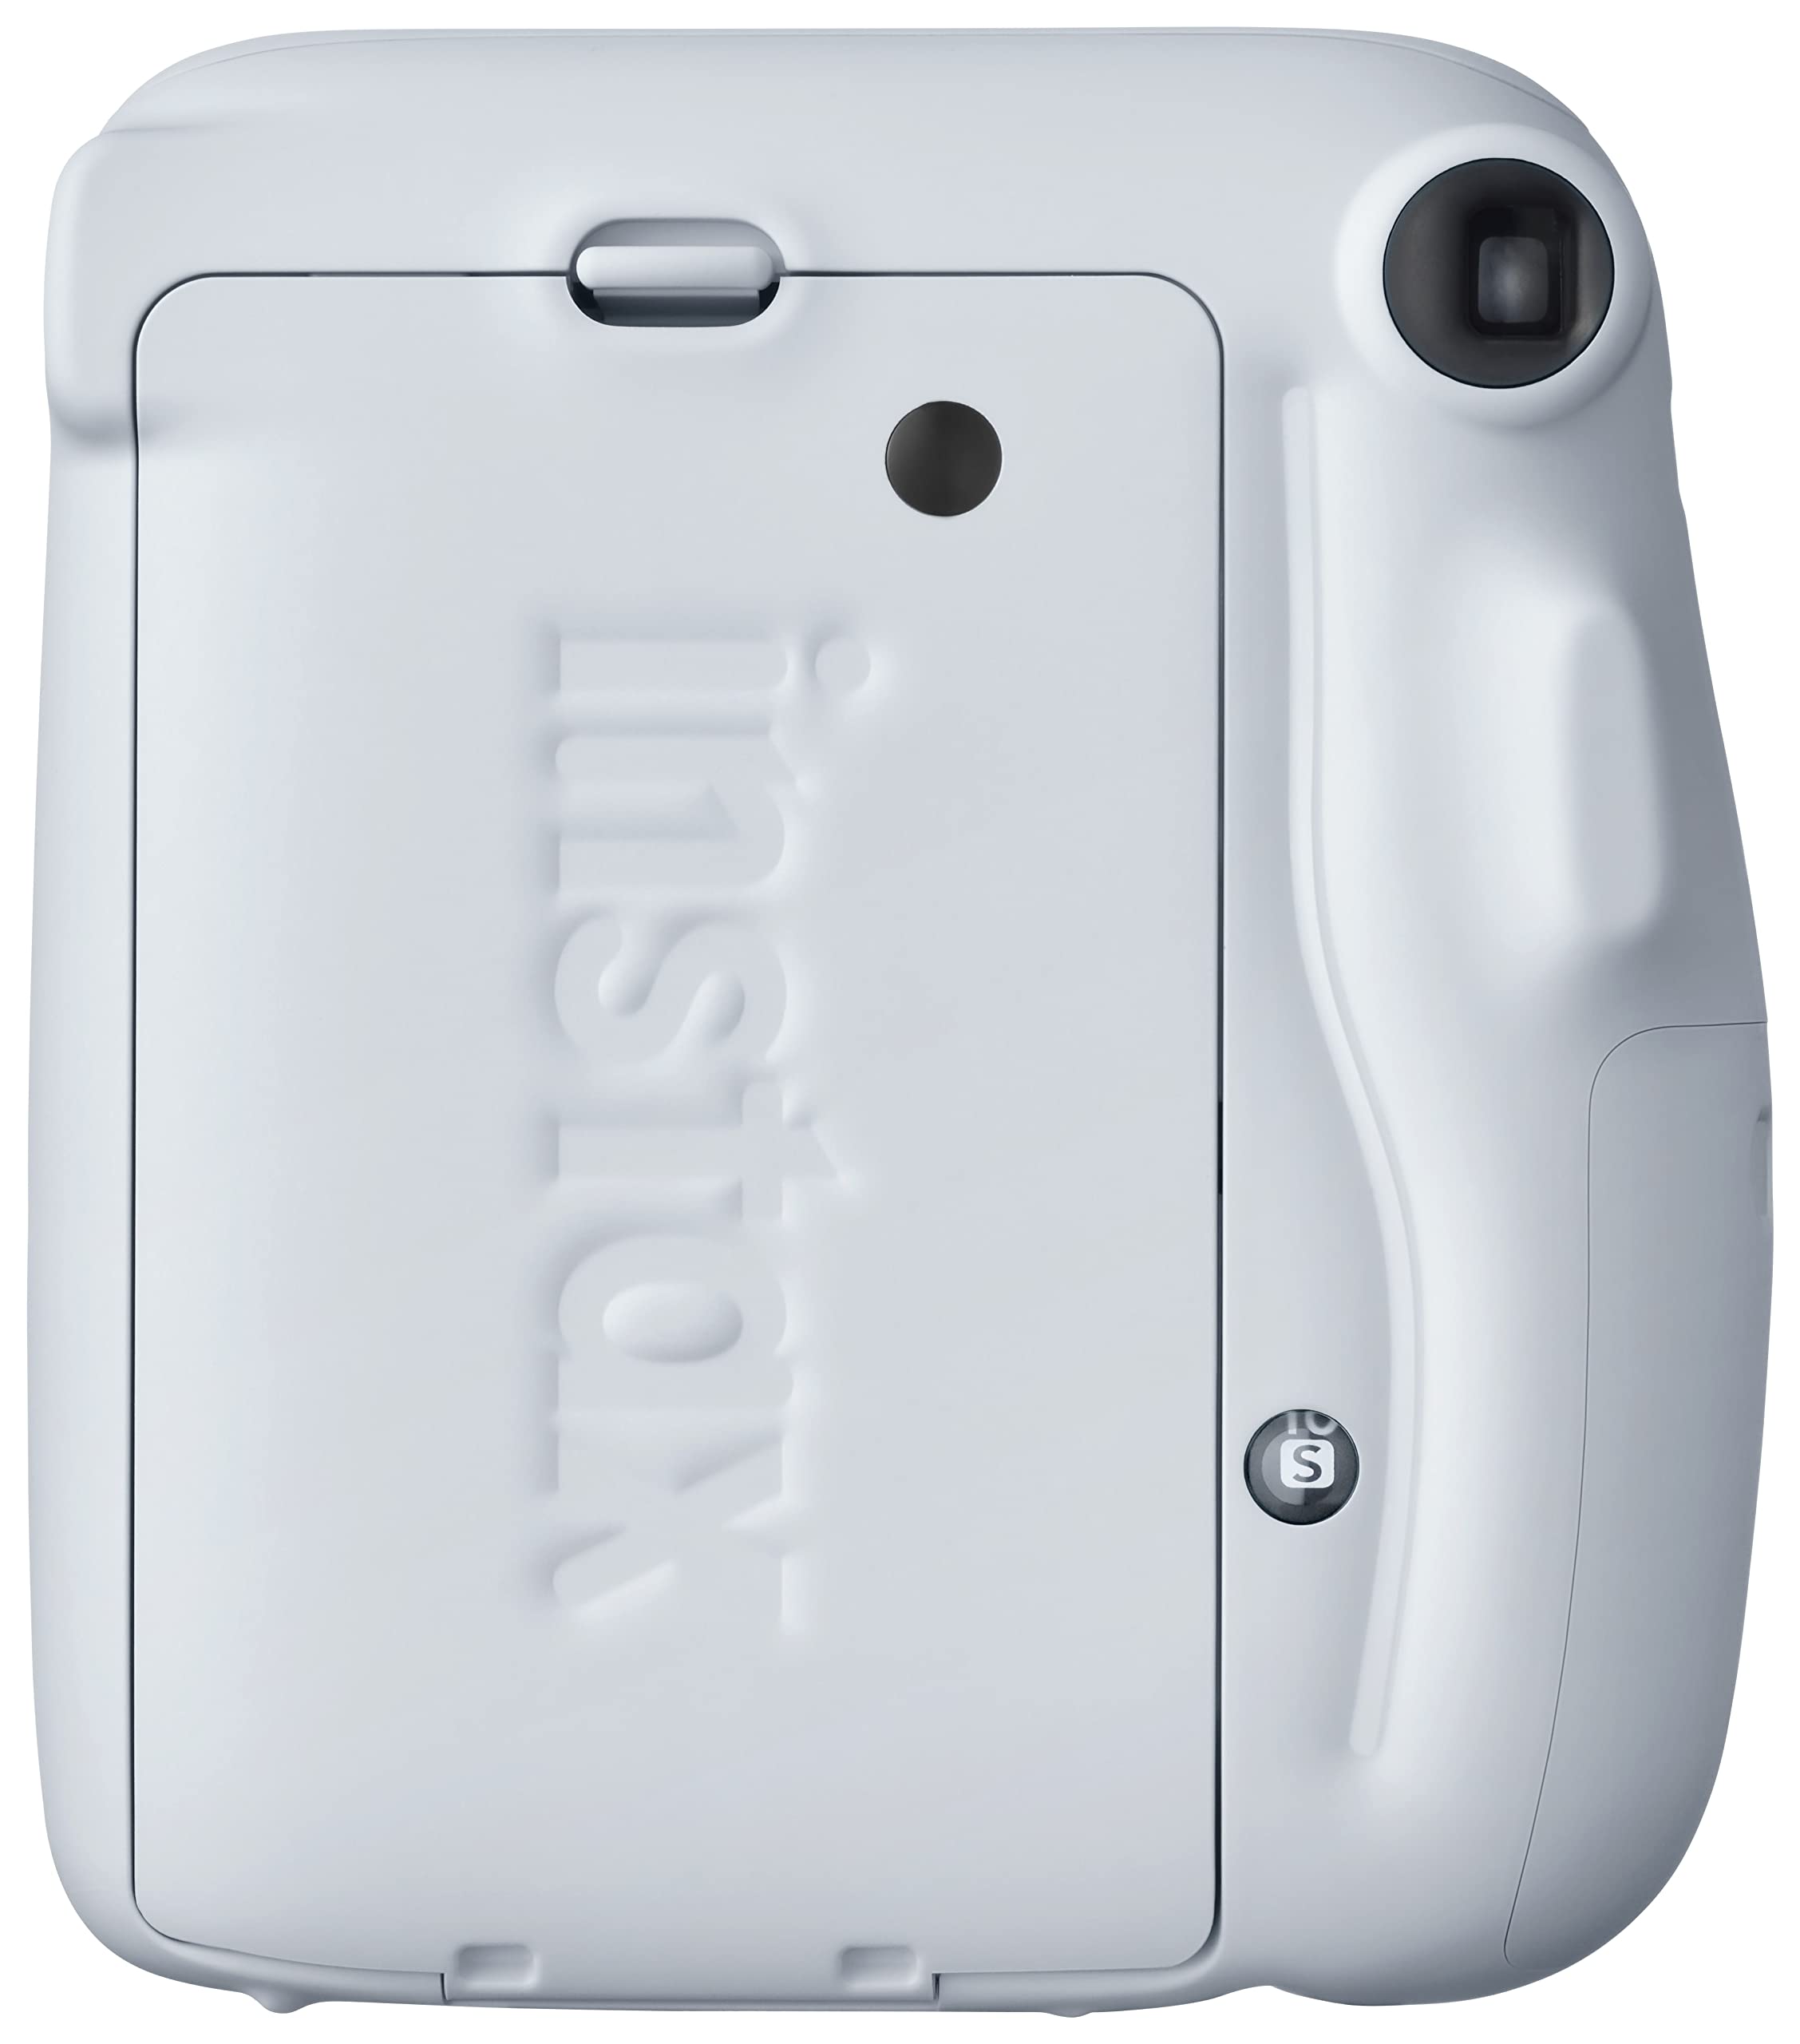 Fujifilm Instax Mini 11 Instant Camera - Ice White